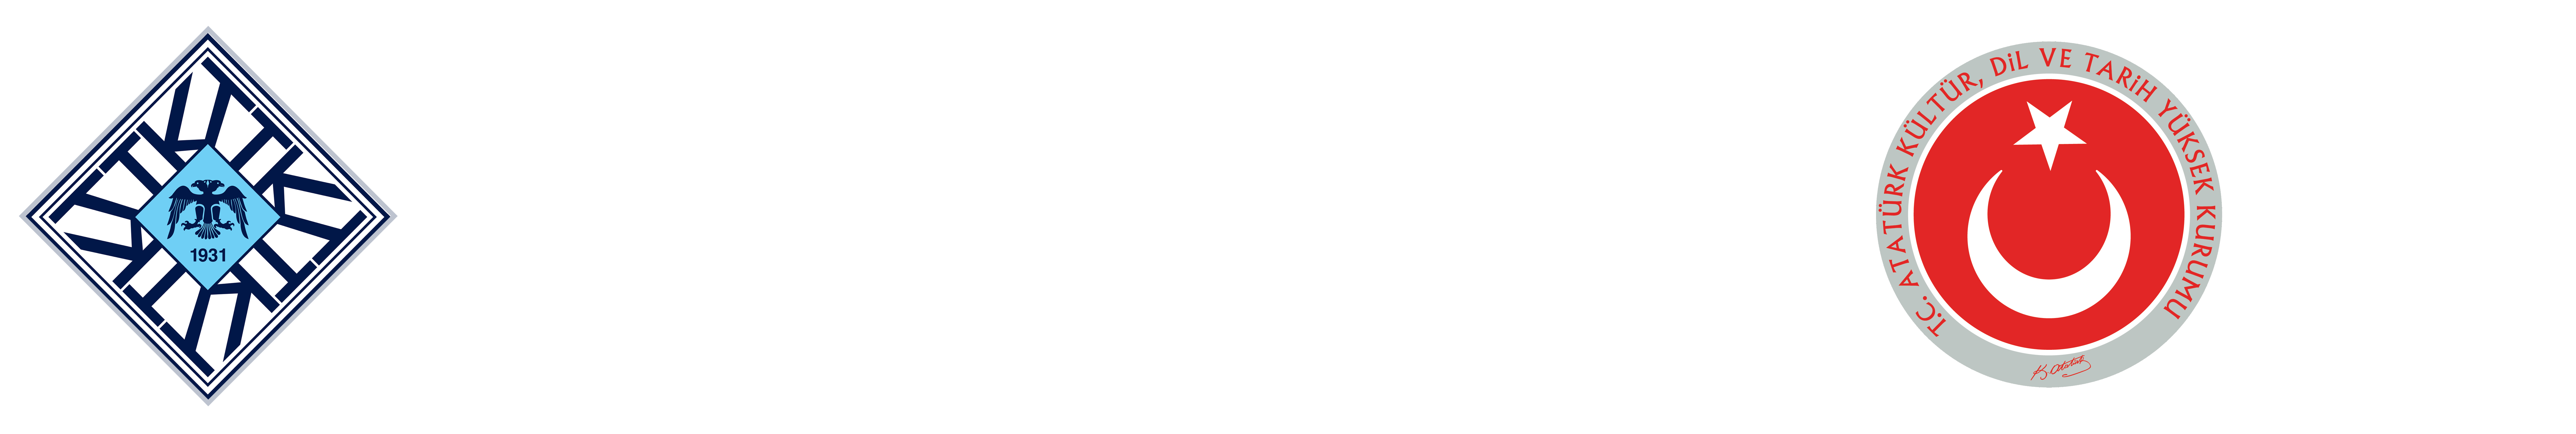 Türk Tarih Kurumu Başkanlığı